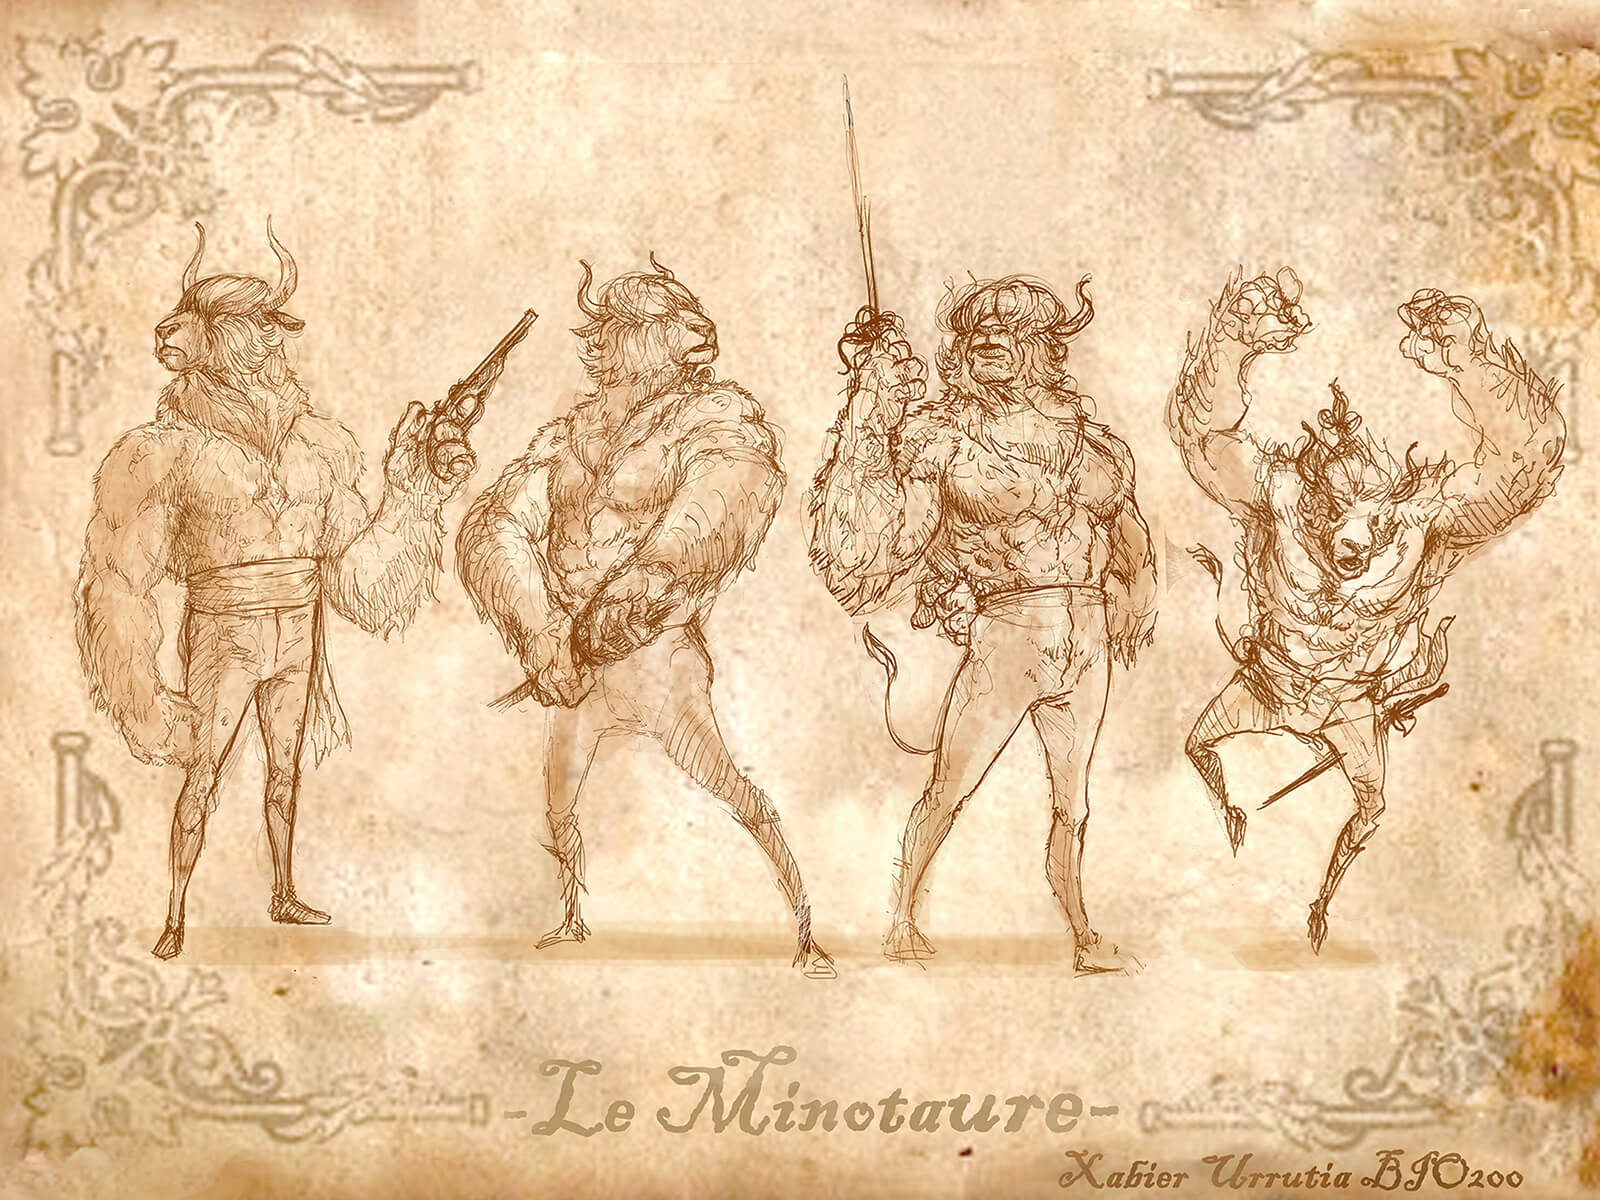 Bocetos en blanco y negro de un minotauro empuñando un estoque y una pistola, su guarida y con la descripción de sus hábitos.